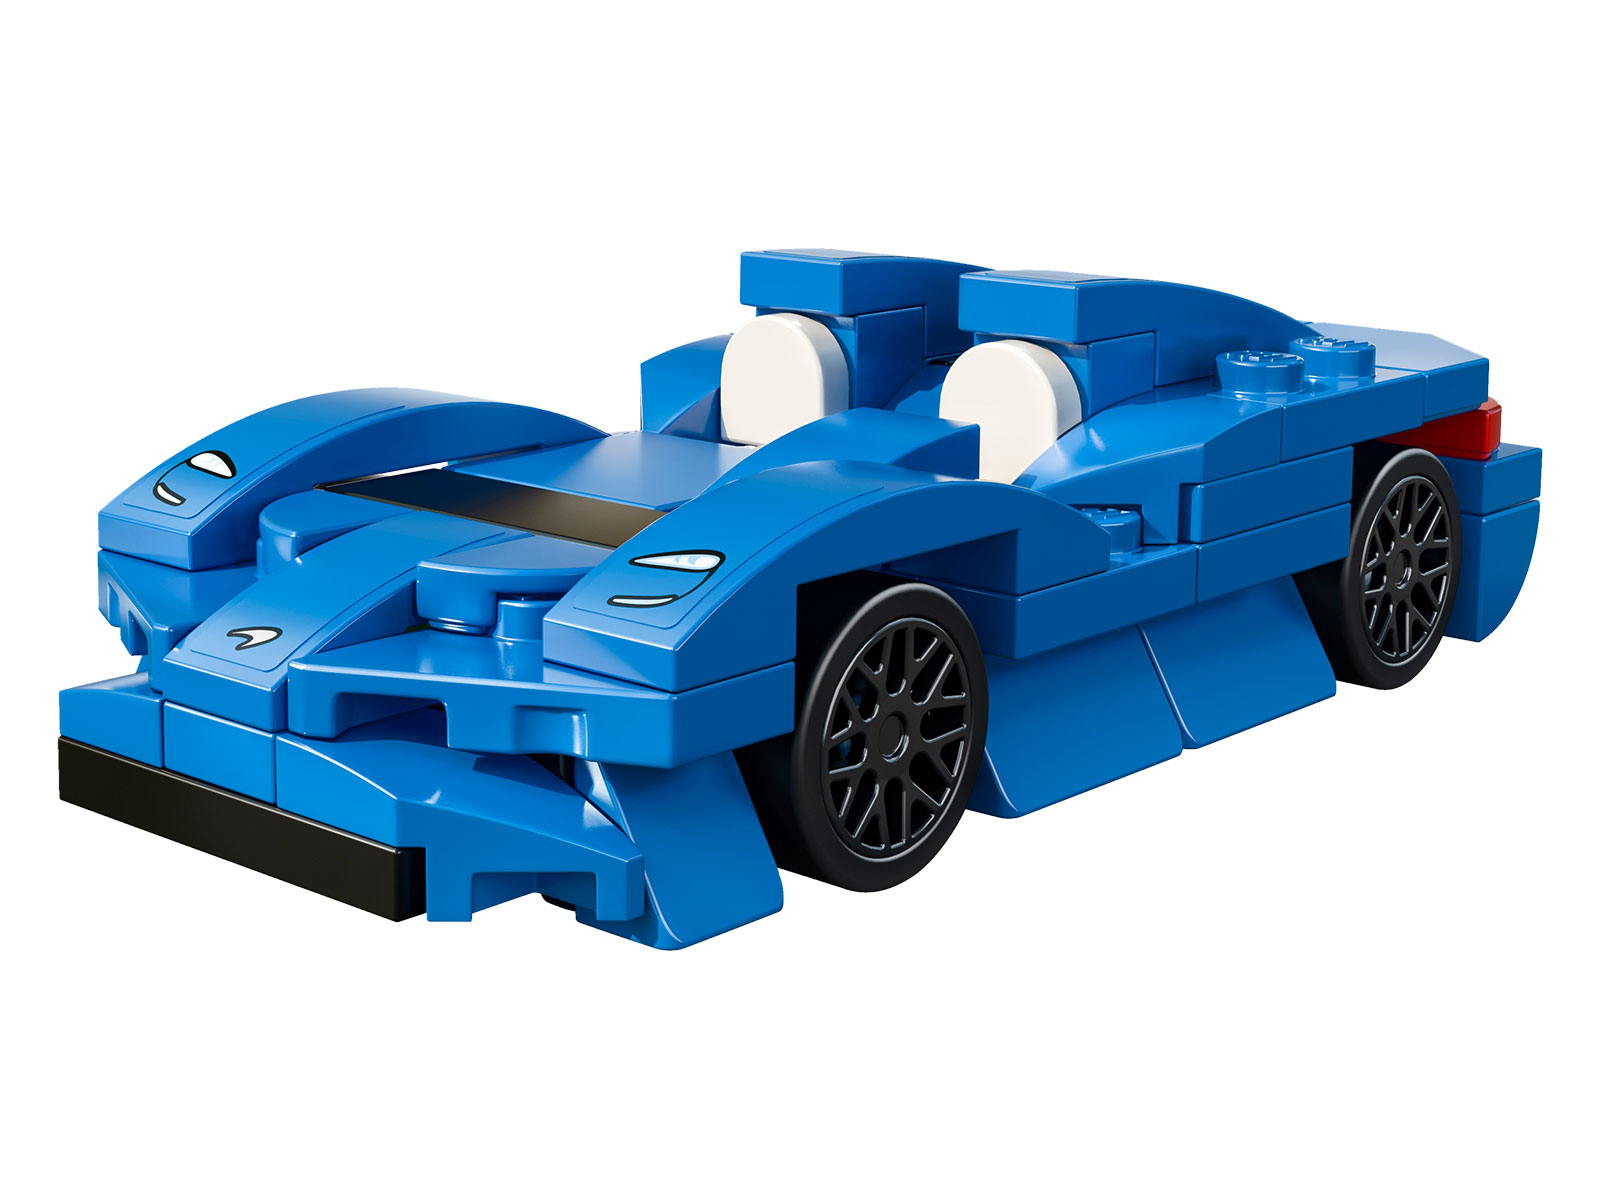 LEGO® Speed Champions 30343 - McLaren Elva